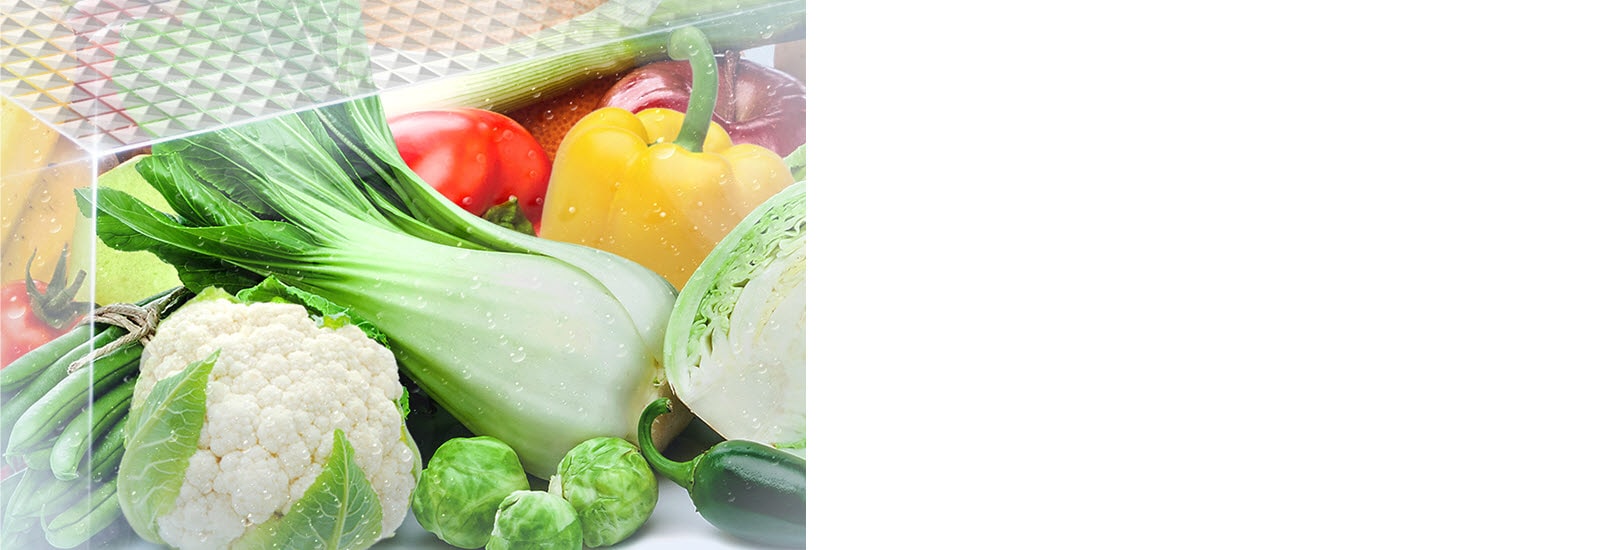 Fresh and vibrant vegetables are shown inside the vegetable crisper drawer.